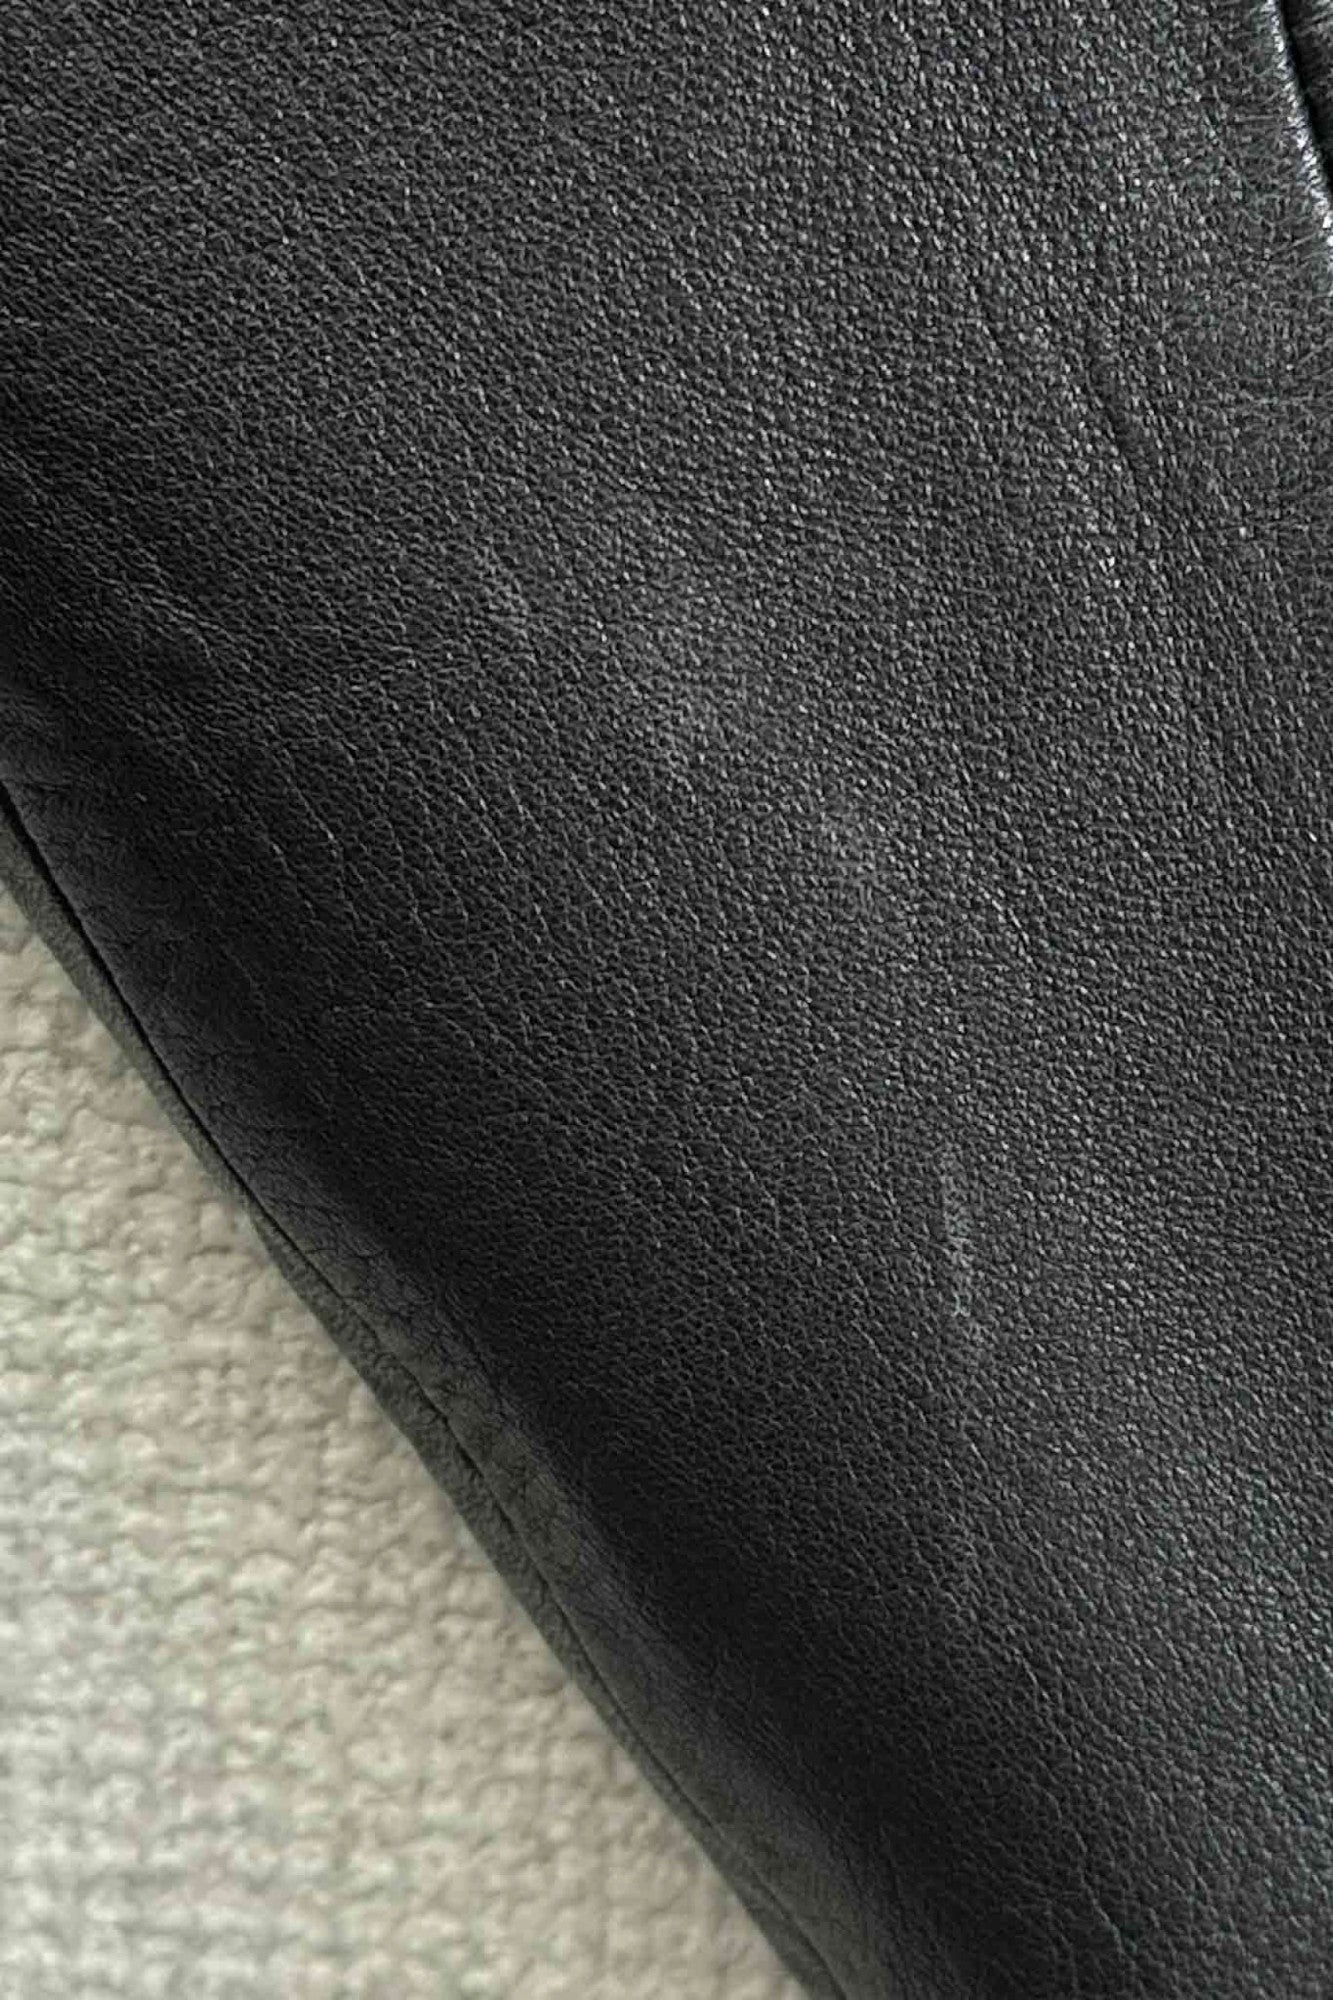 SIC black leather jacket